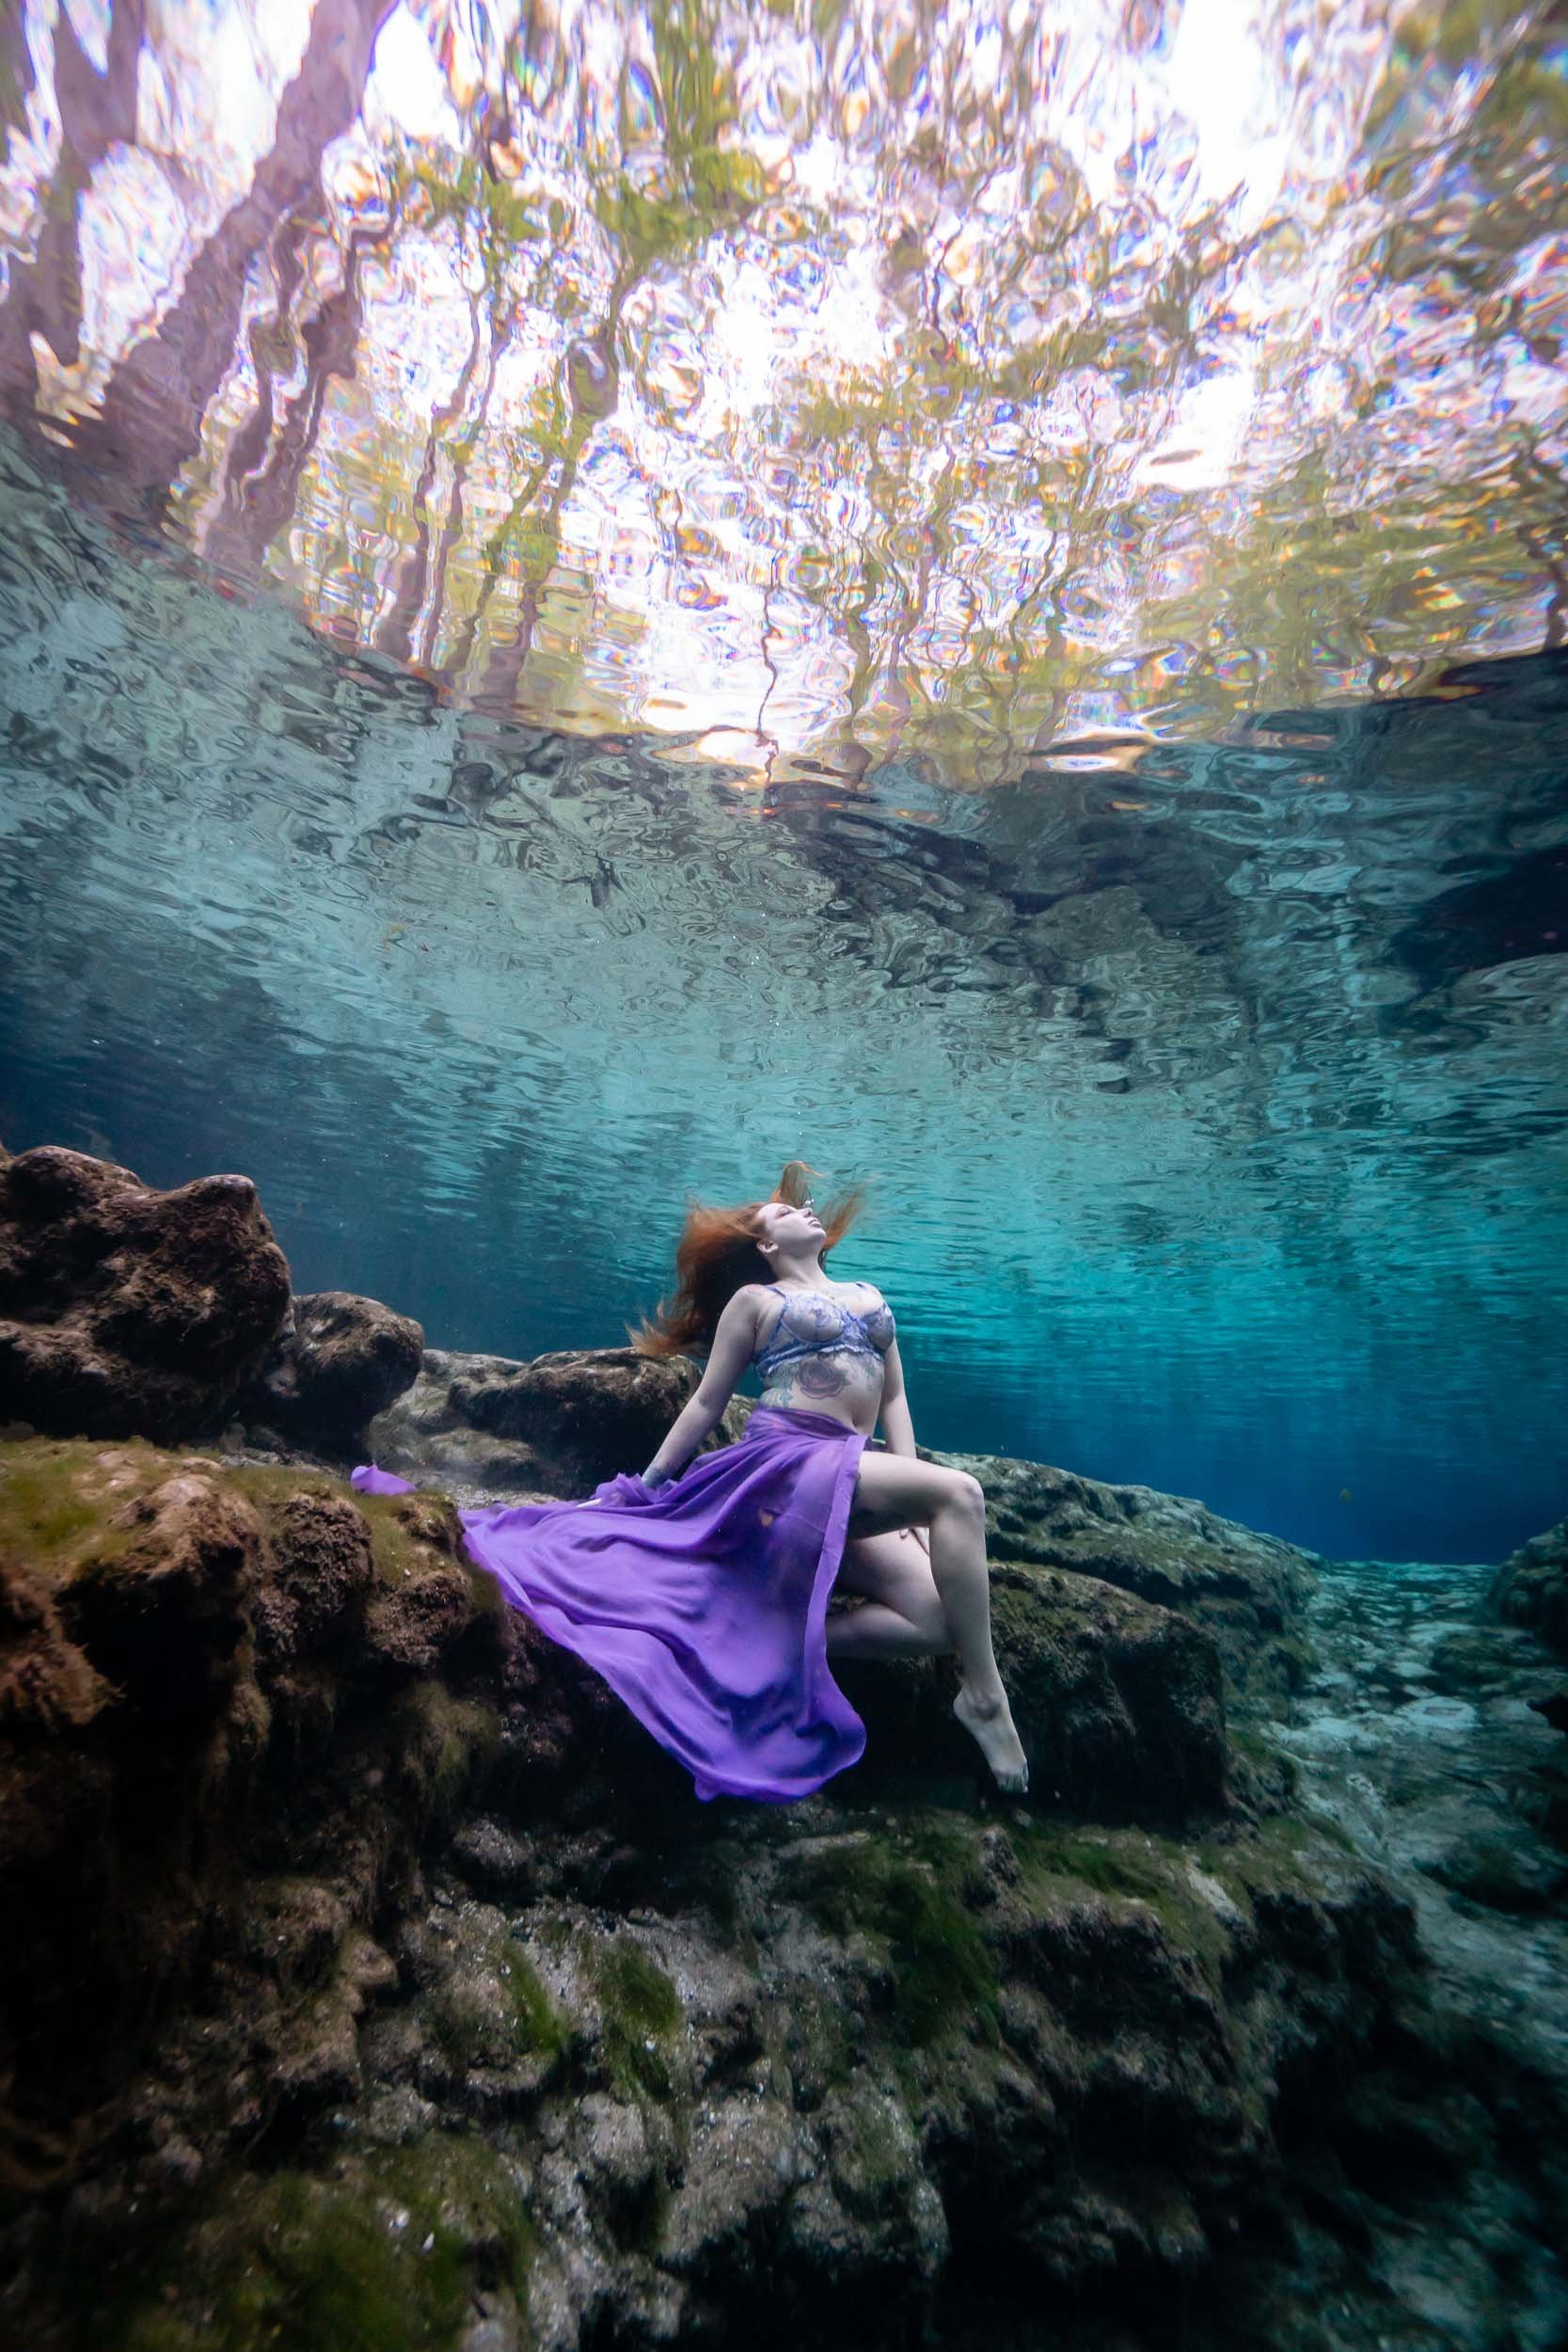 Underwater model Aimee posing in the springs